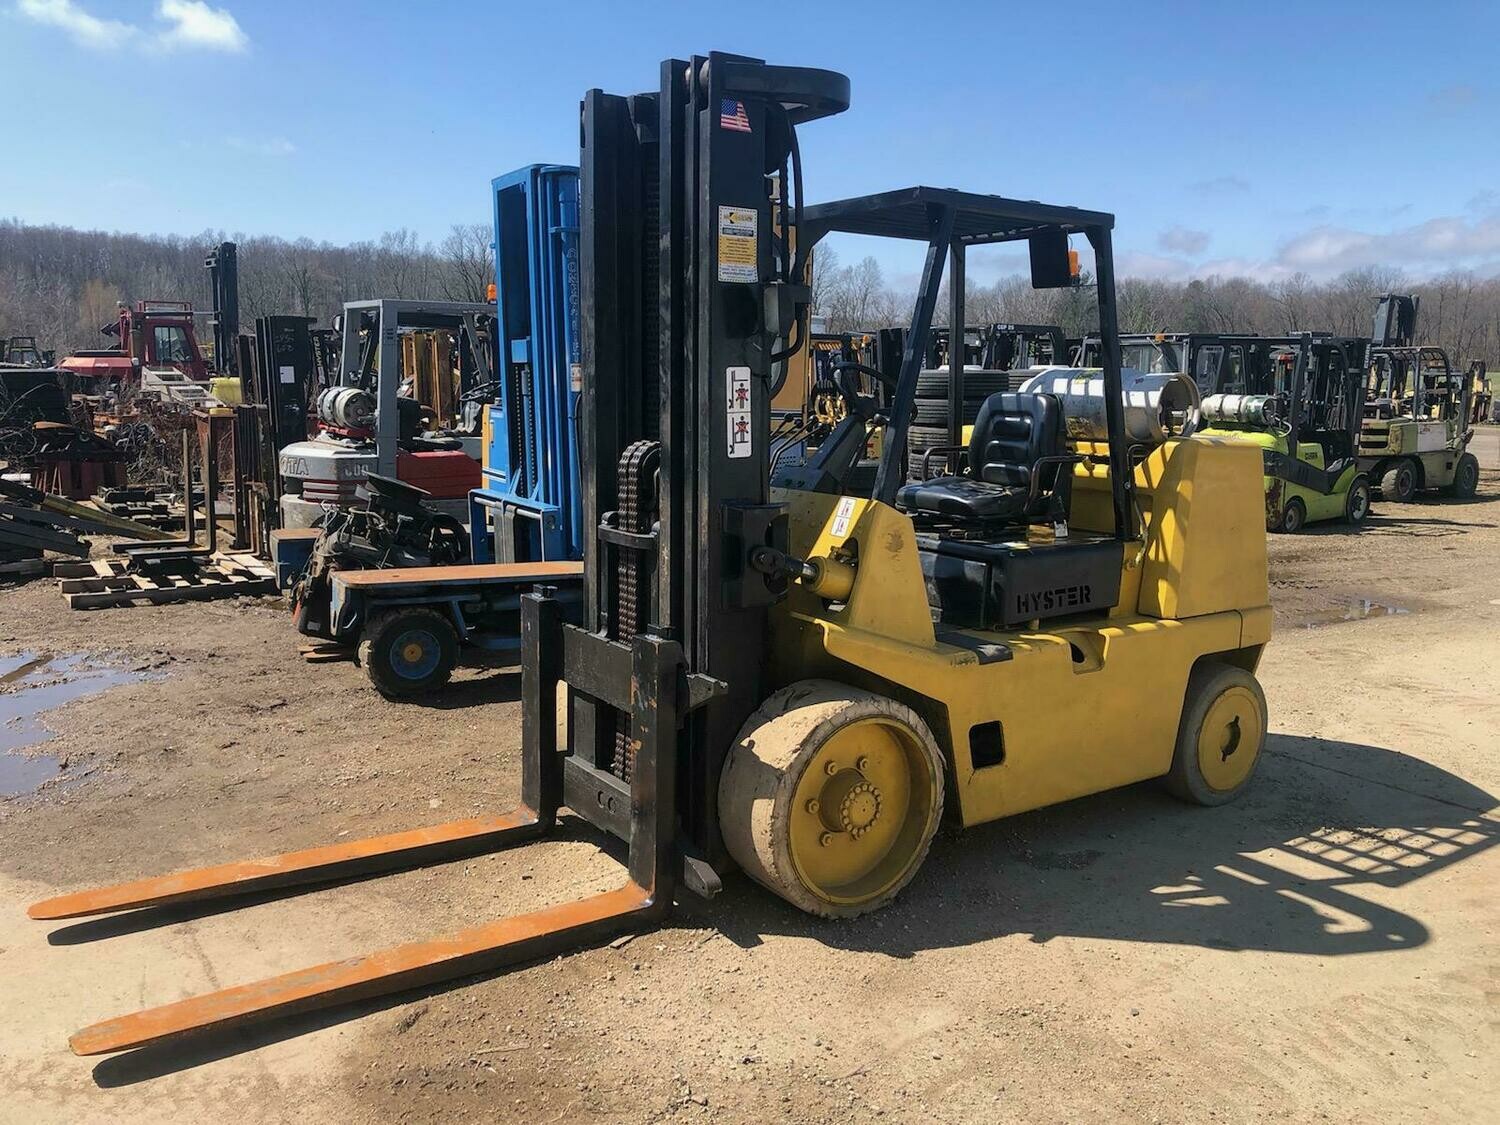 15,500 lb Hyster Forklift For Sale